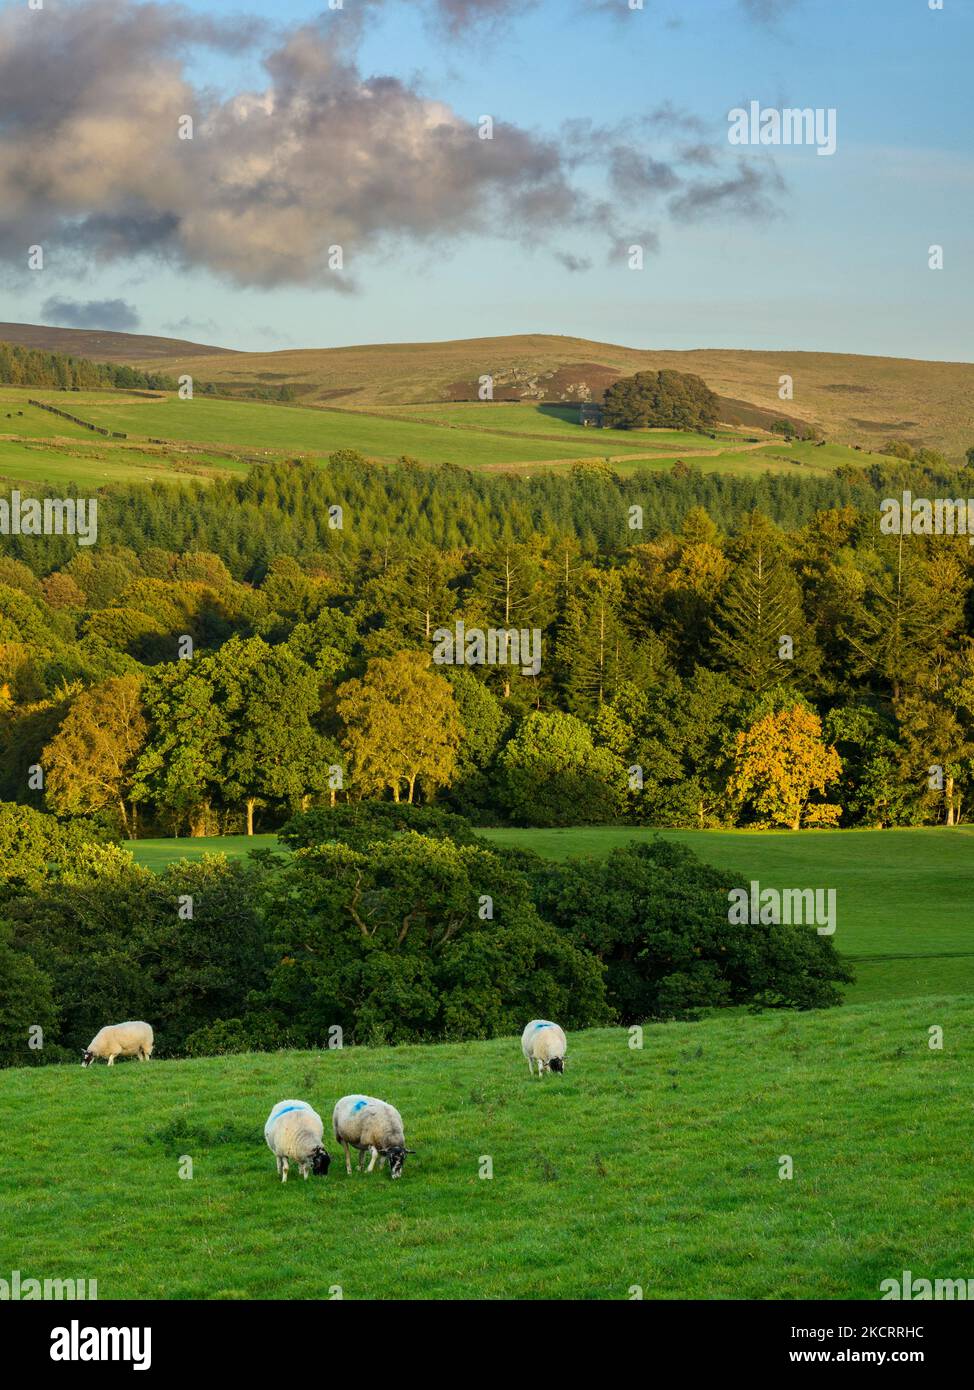 Belle vue ensoleillée sur Wharfedale (forêt d'arbres sur la colline de la vallée, soleil sur les collines hautes, terres agricoles, herbage, ciel bleu) - Yorkshire Dales, Angleterre, Royaume-Uni. Banque D'Images